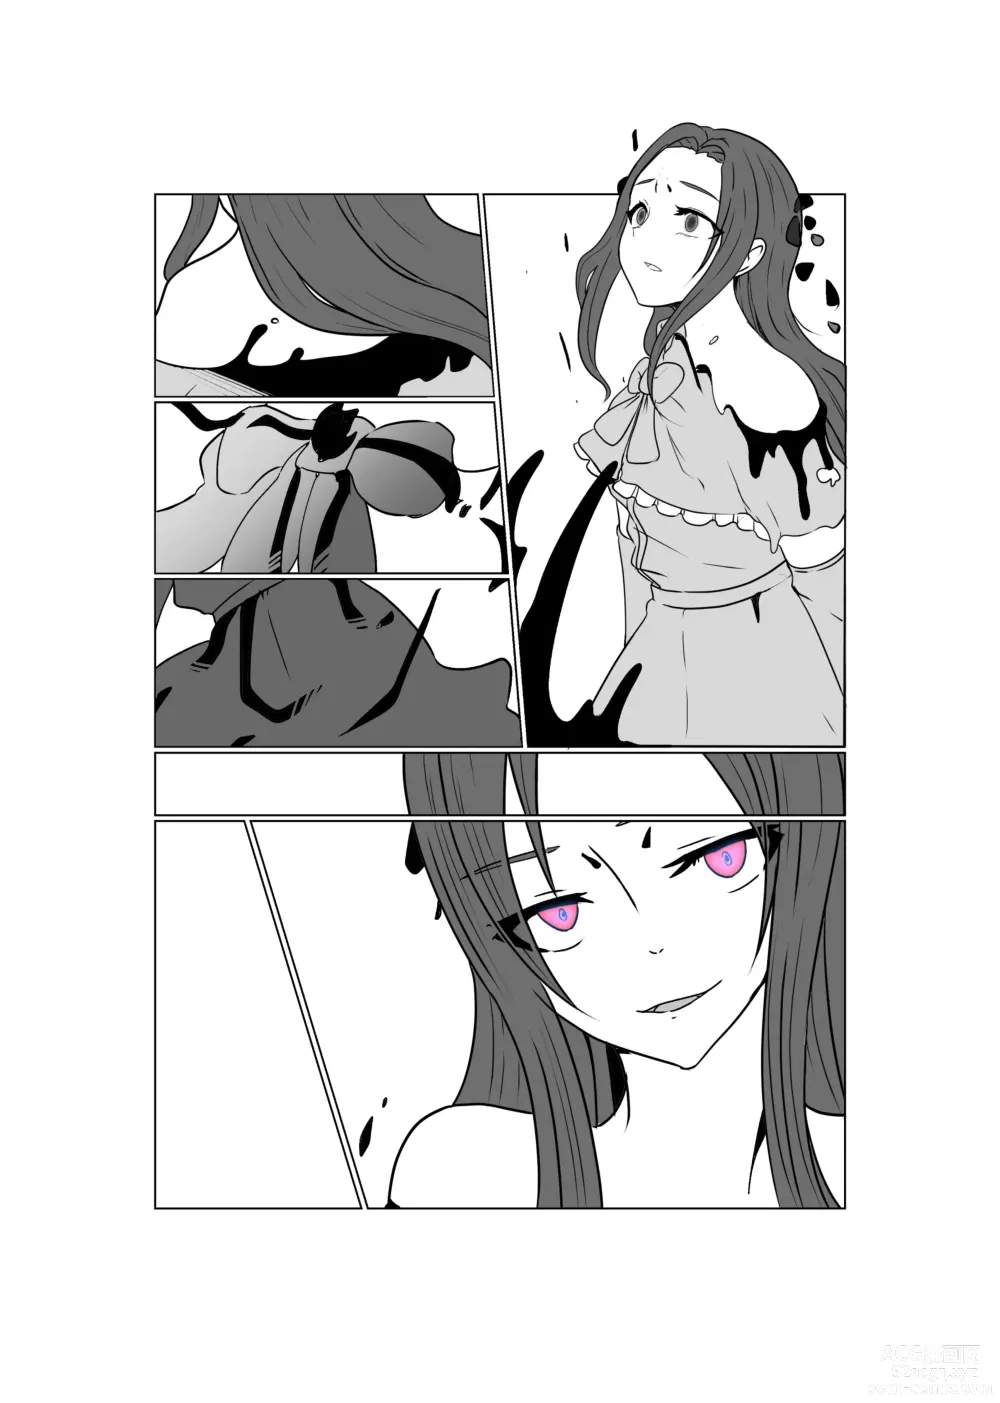 Page 128 of doujinshi Aku no Hana Vol.3 Skeb+α Matome